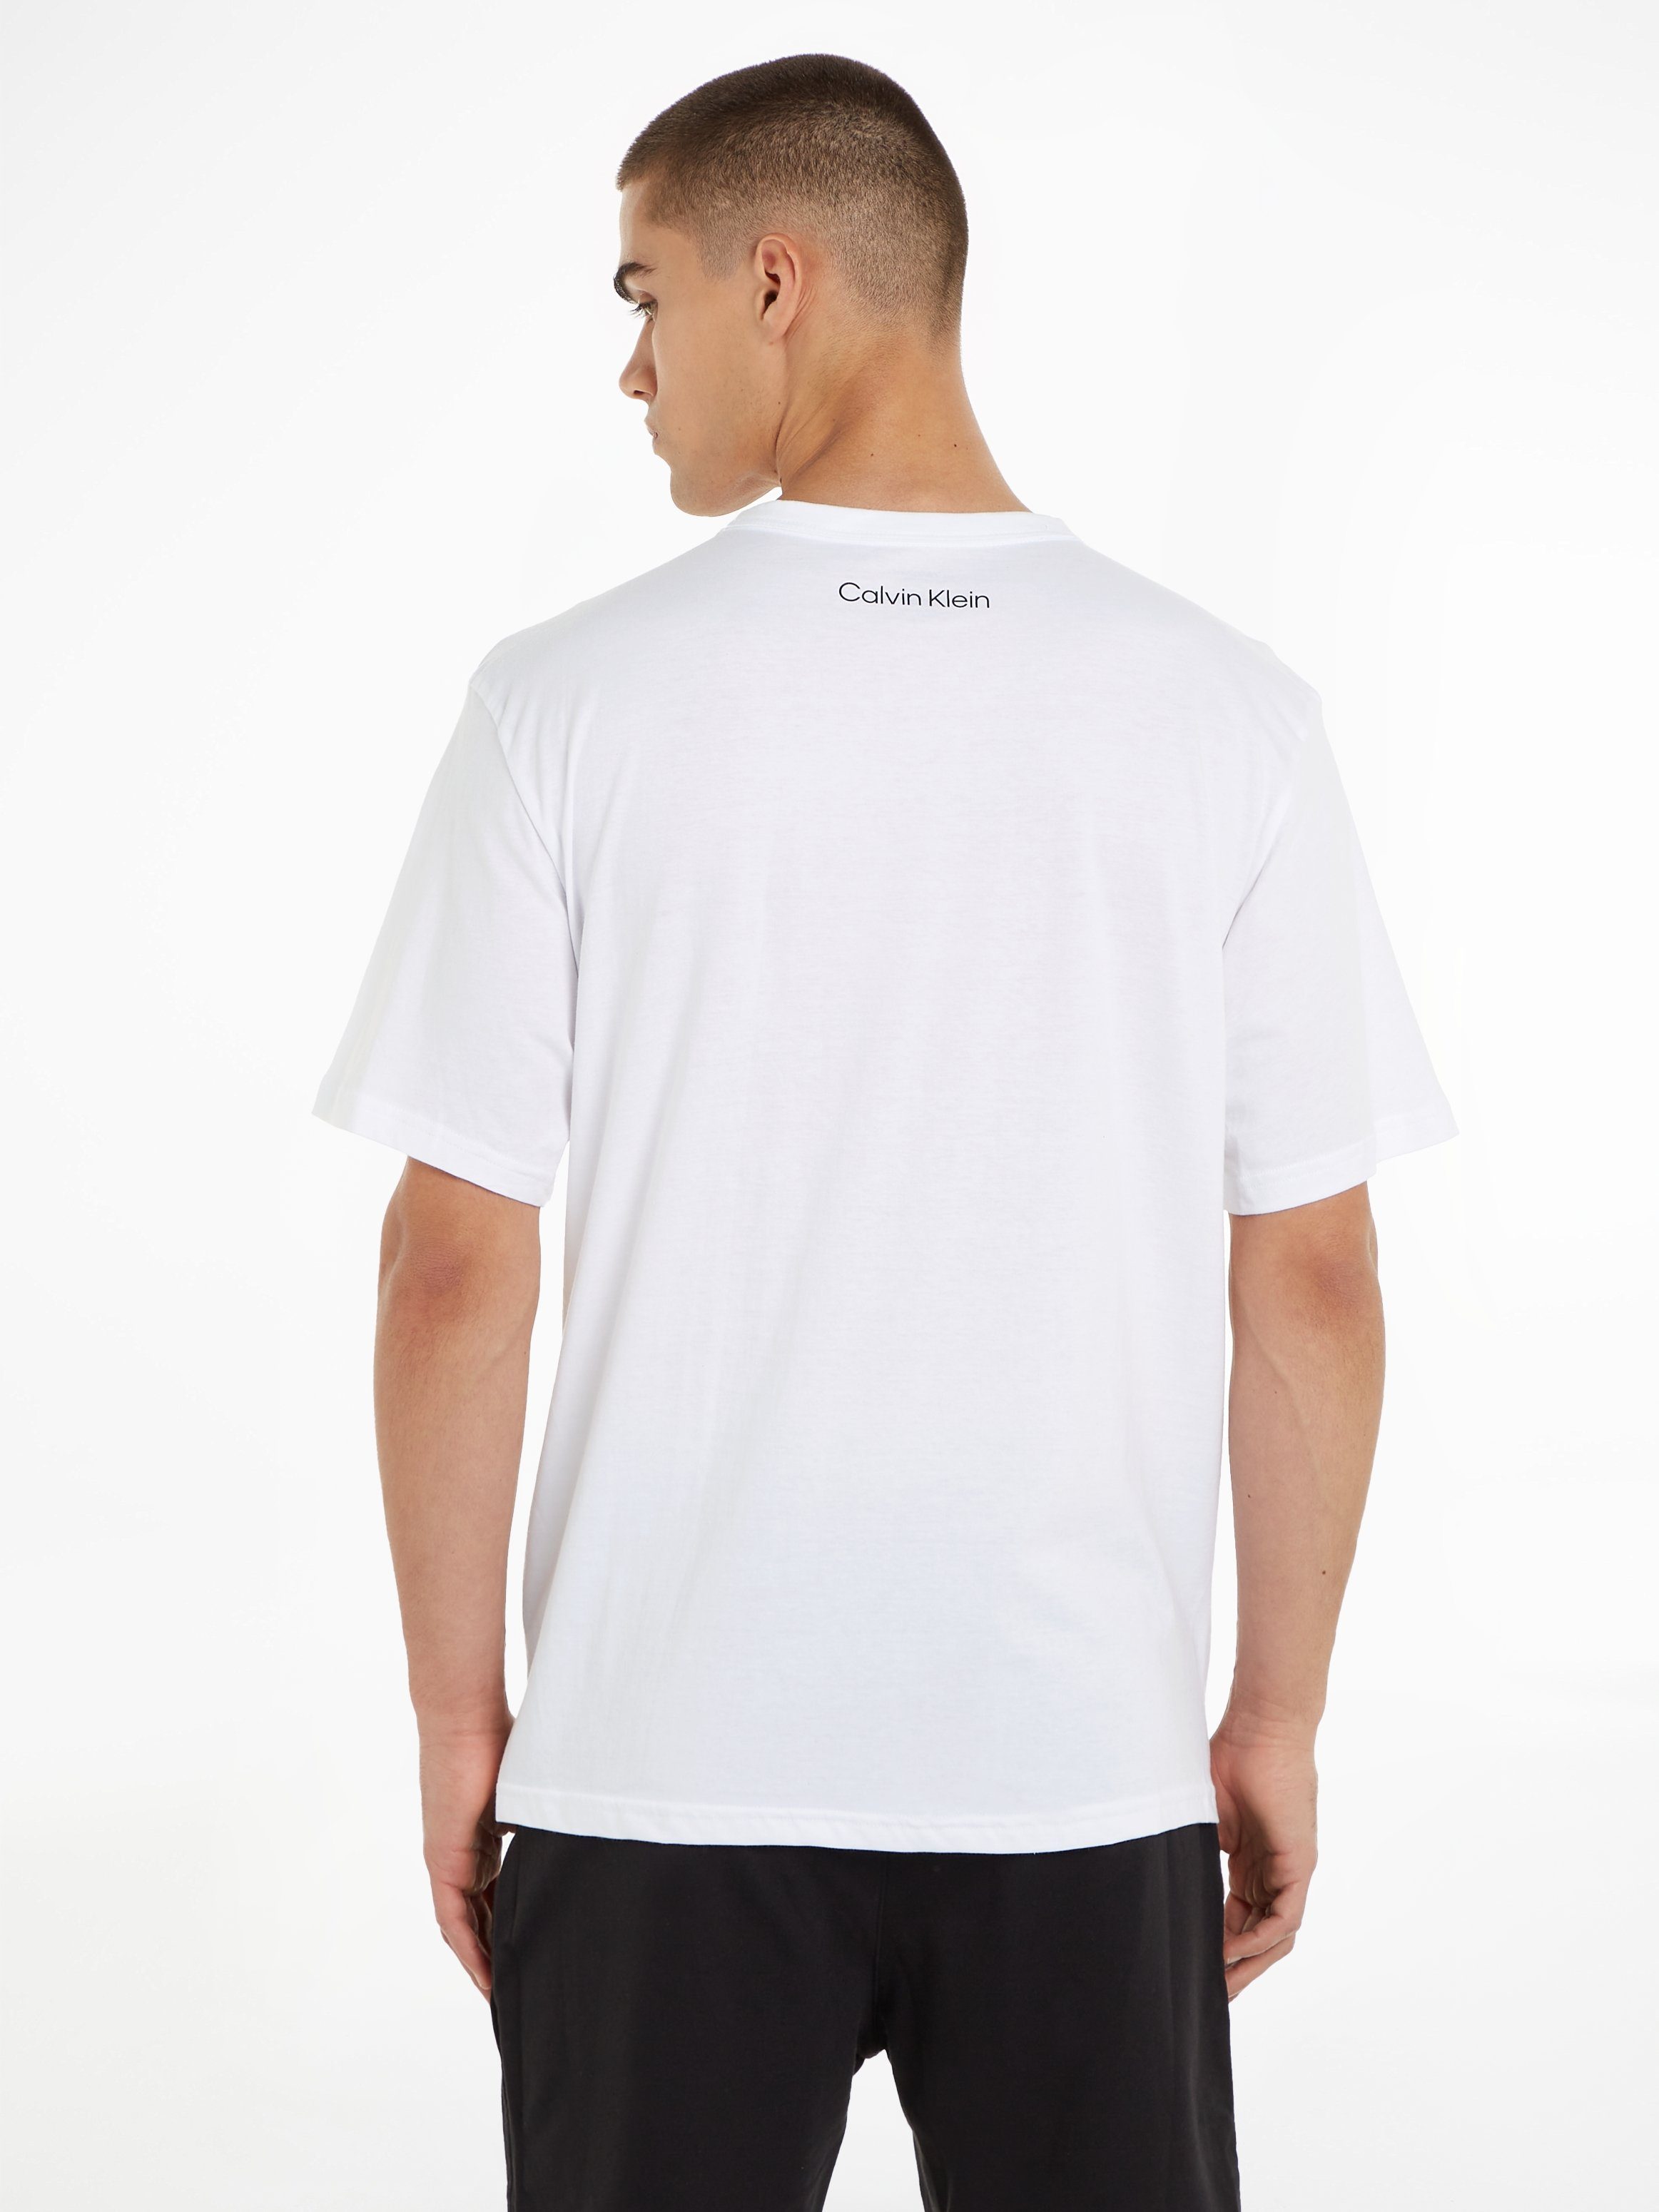 Logodruck Underwear T-Shirt CREW Klein der S/S Brust NECK WHITE mit auf Calvin